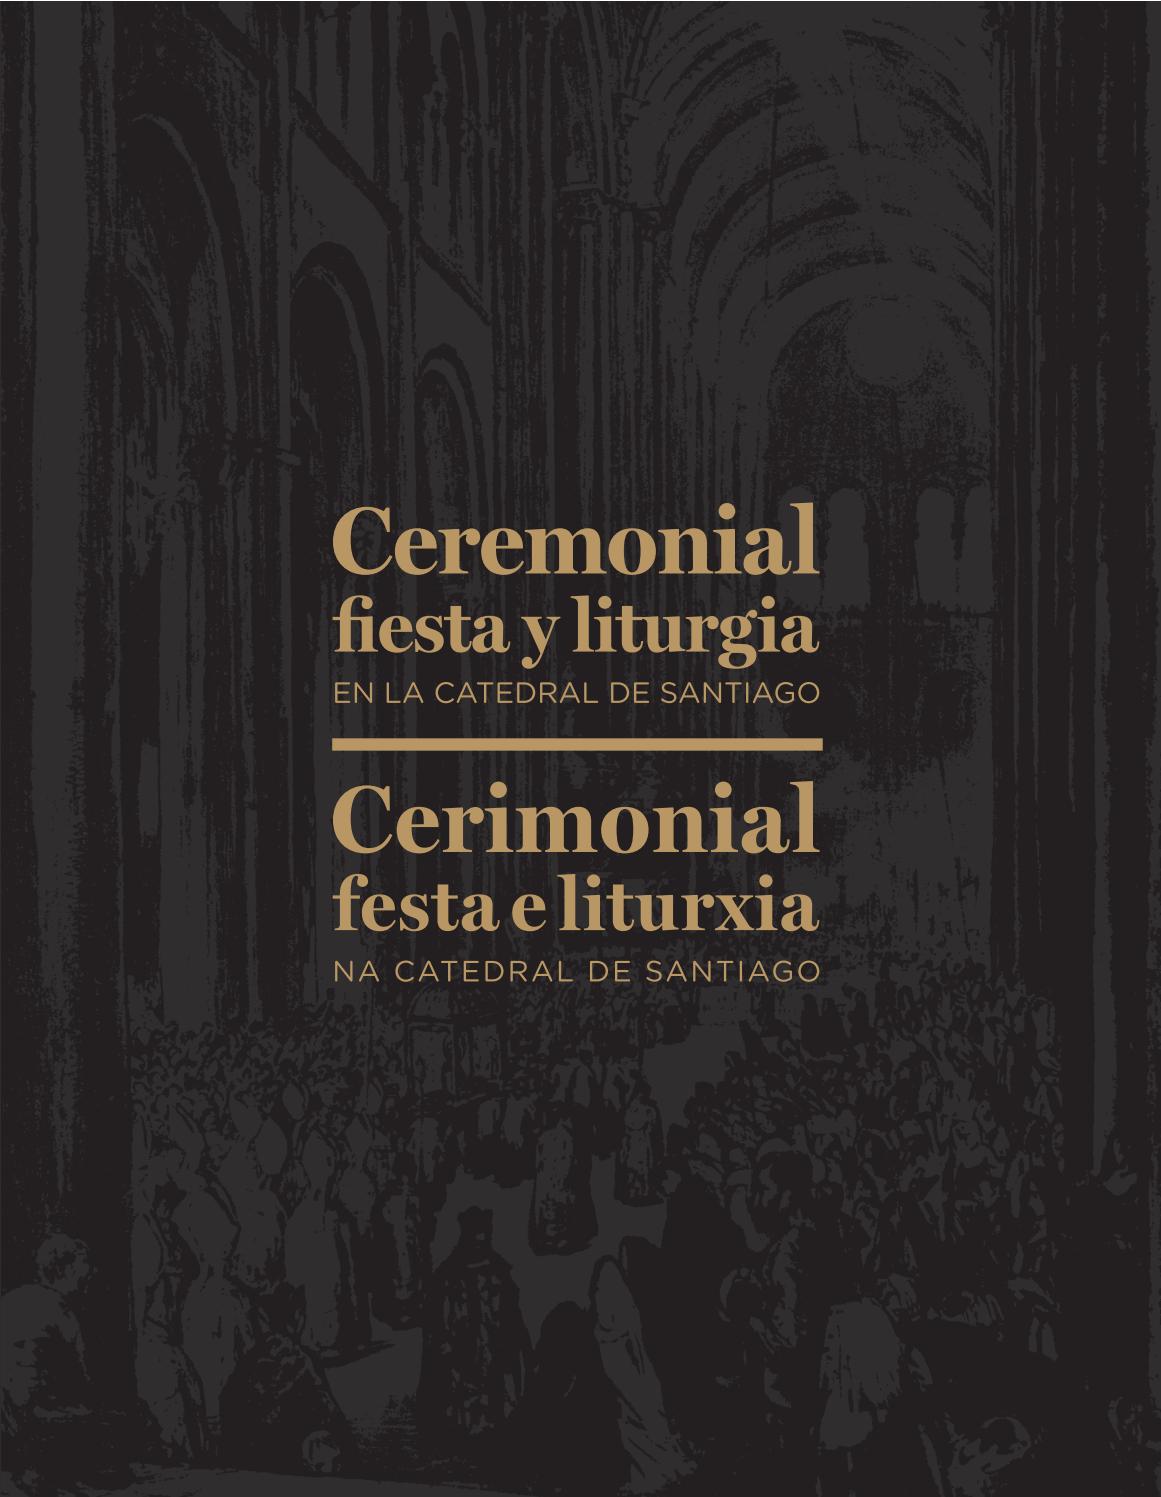 Imagen de portada del libro Ceremonial, fiesta y liturgia en la Catedral de Santiago